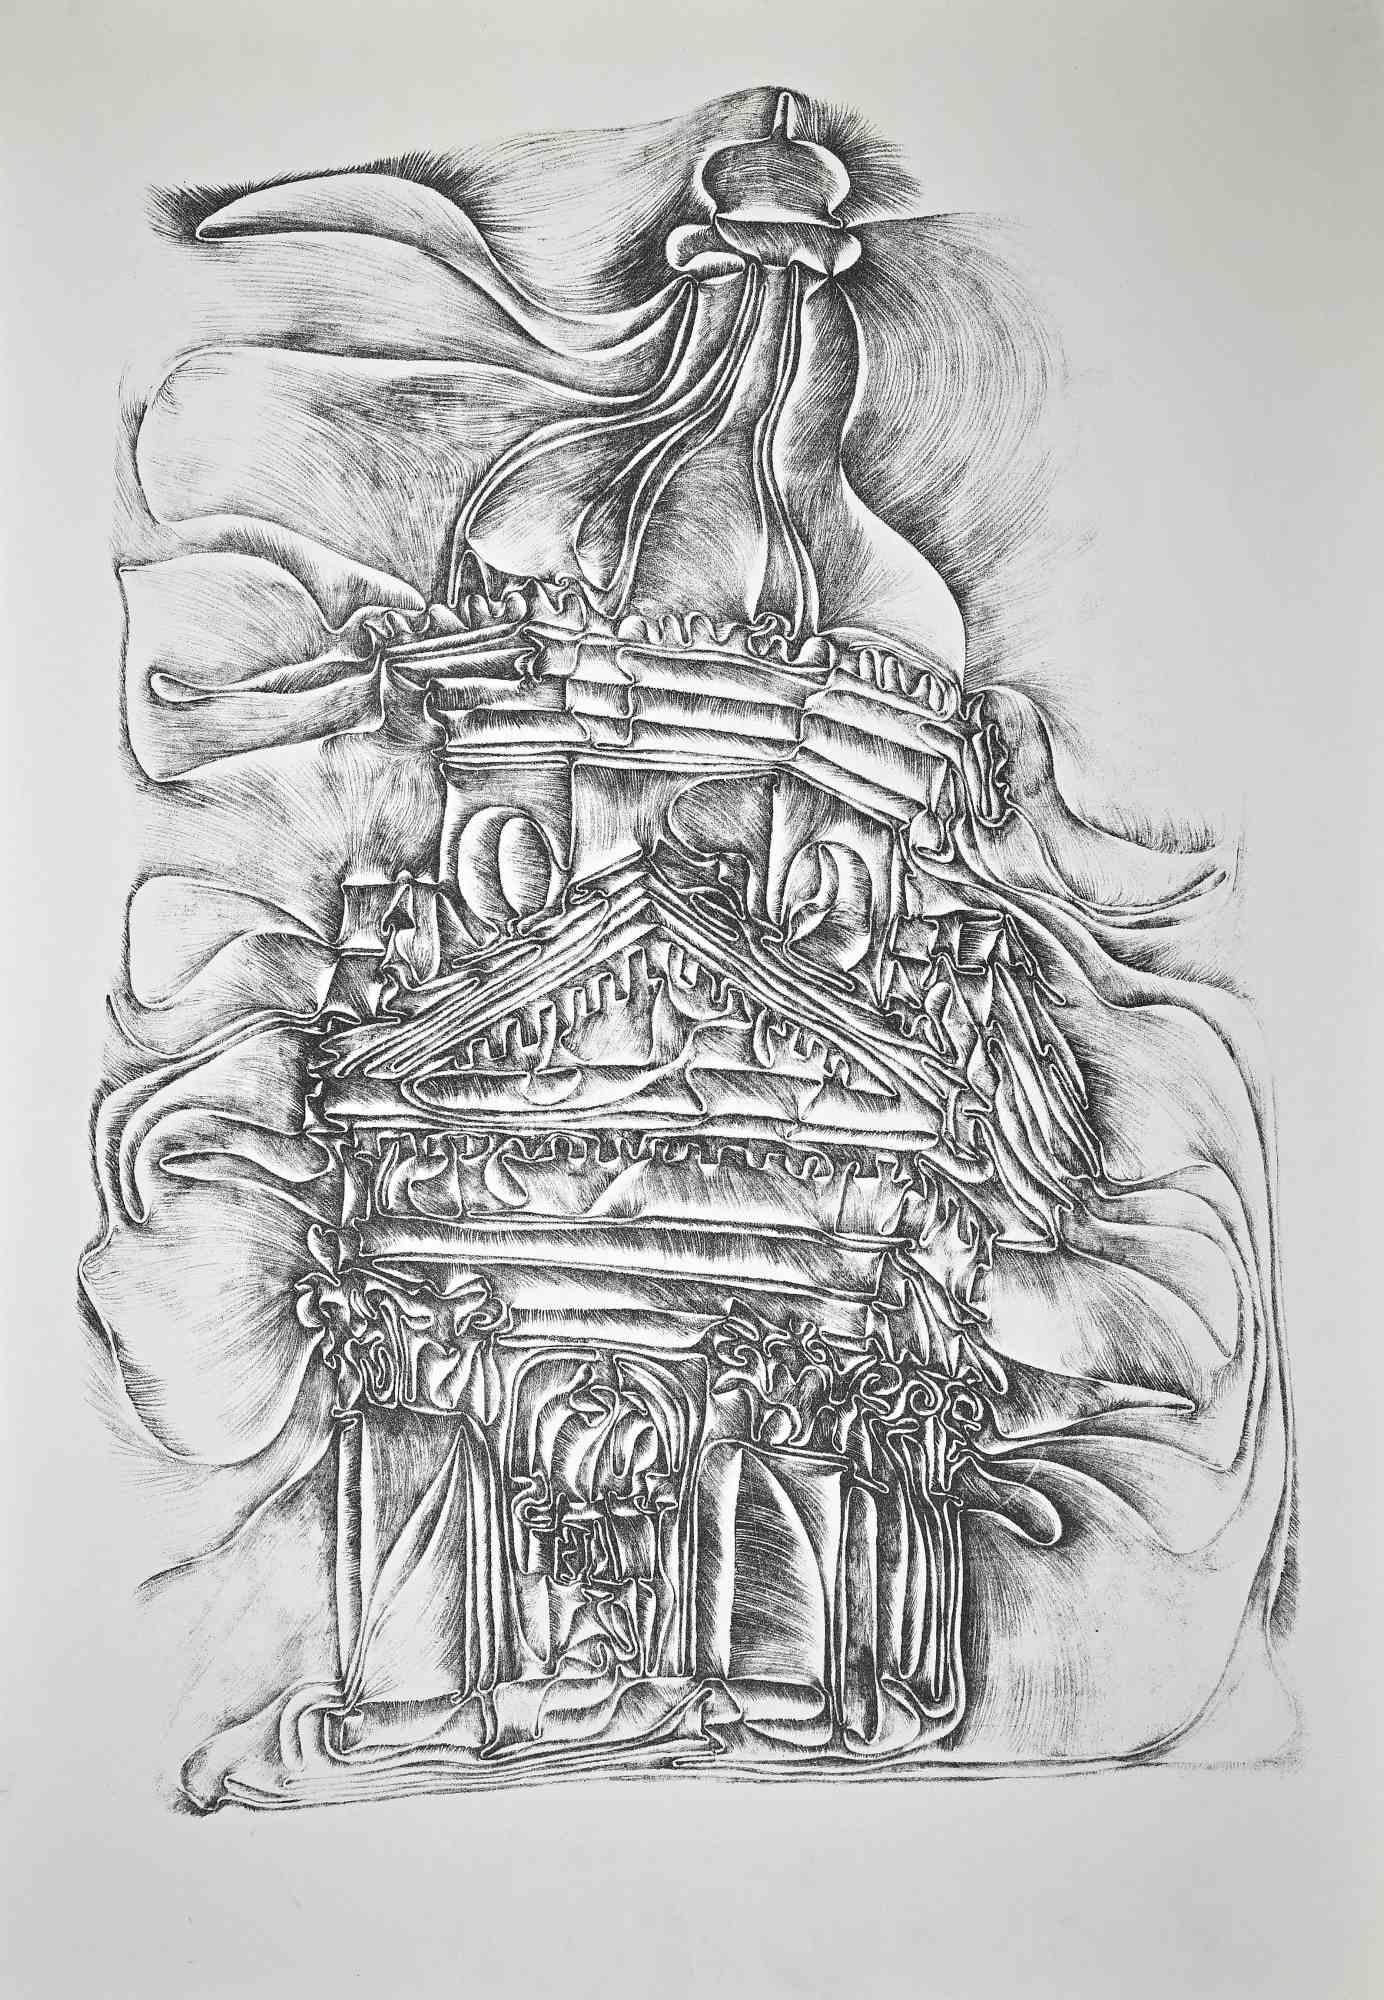 Cathédrale est une gravure originale en noir et blanc de l'artiste autrichien Fritz Baumgartner.

En très bonnes conditions, à l'exception d'une petite rousseur diffuse dans la marge qui n'affecte pas l'image

L'œuvre représente une cathédrale par